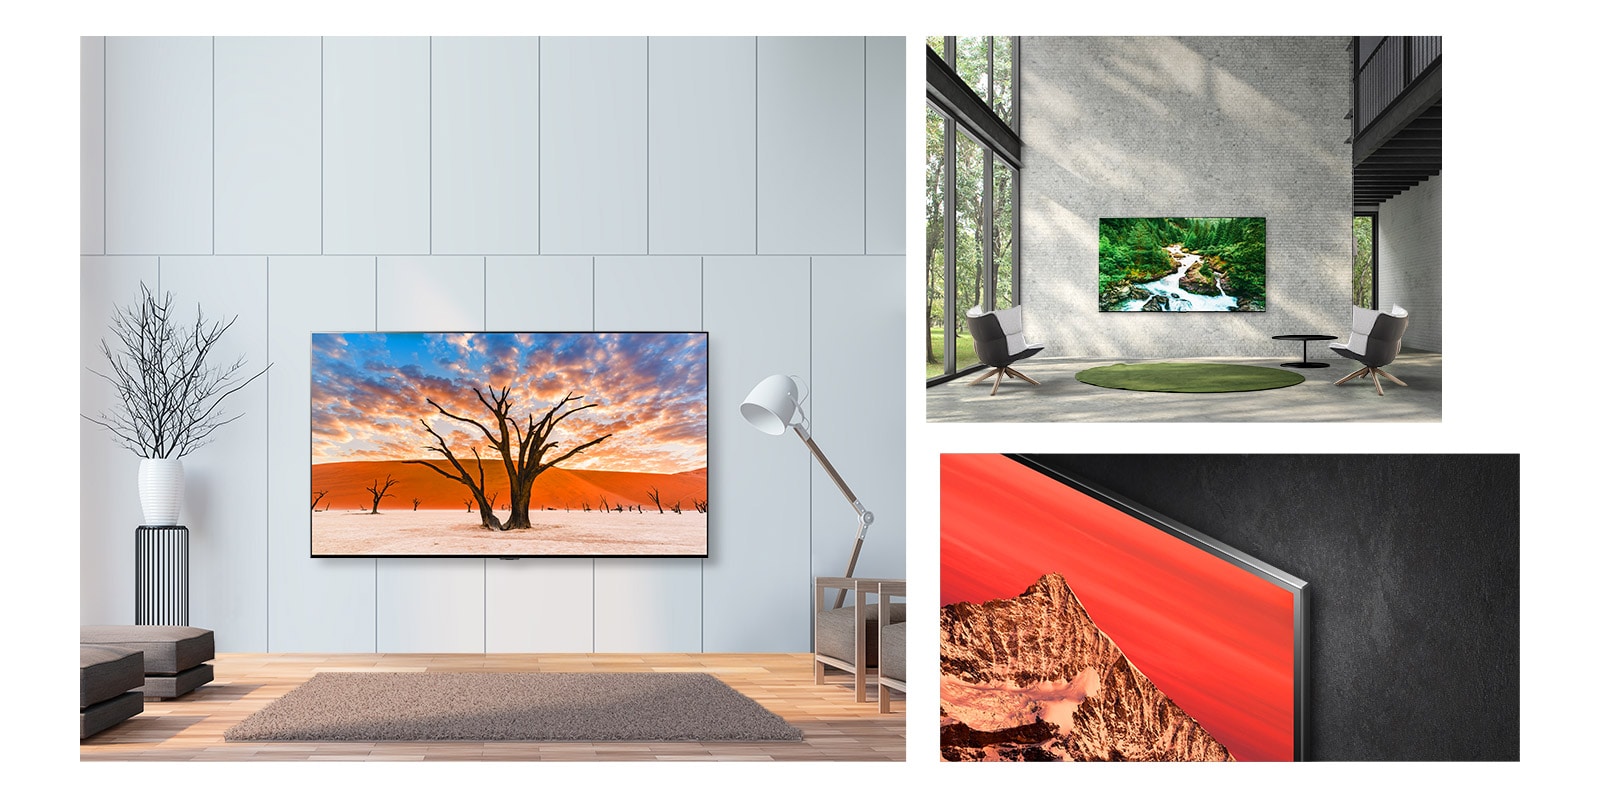 Tri prizora tankog i velikog televizora LG QNED Mini LED vise na zidu poput umjetničkog djela.